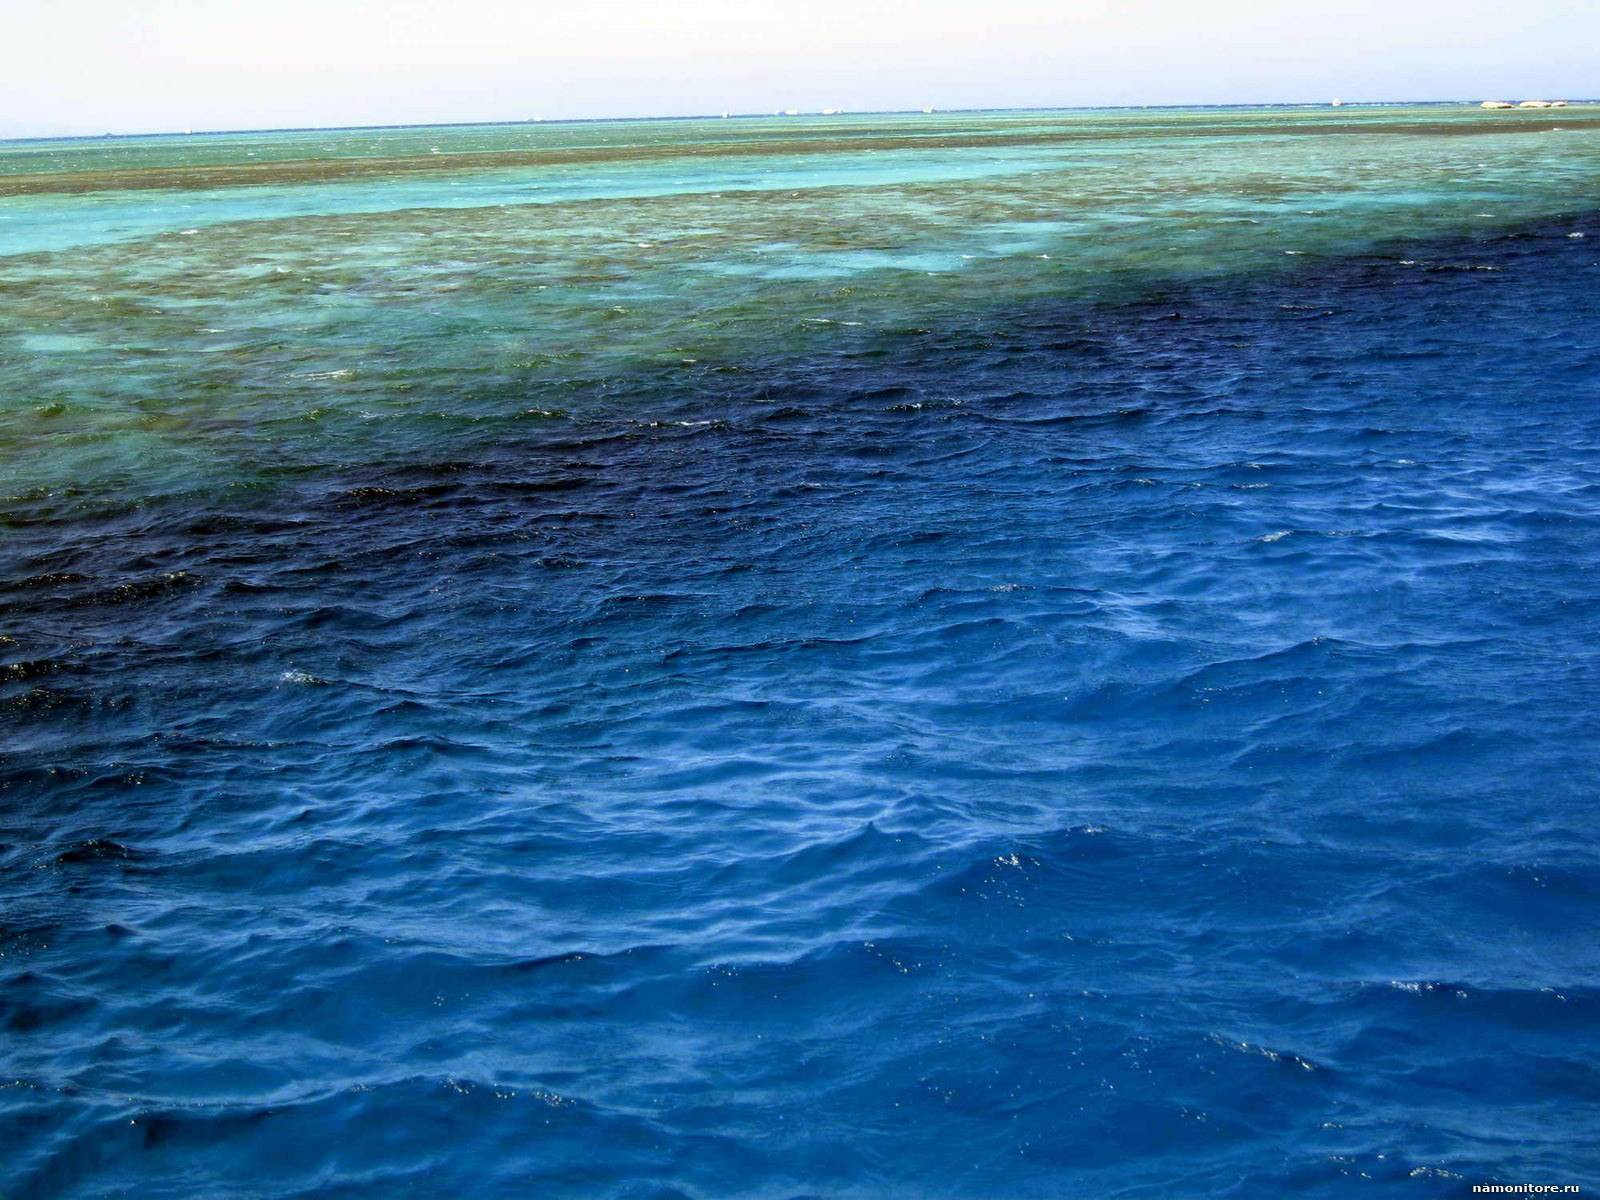 Причины воды в океане. Синее море. Воды Атлантики. Цвет воды океанов. Море разного цвета.